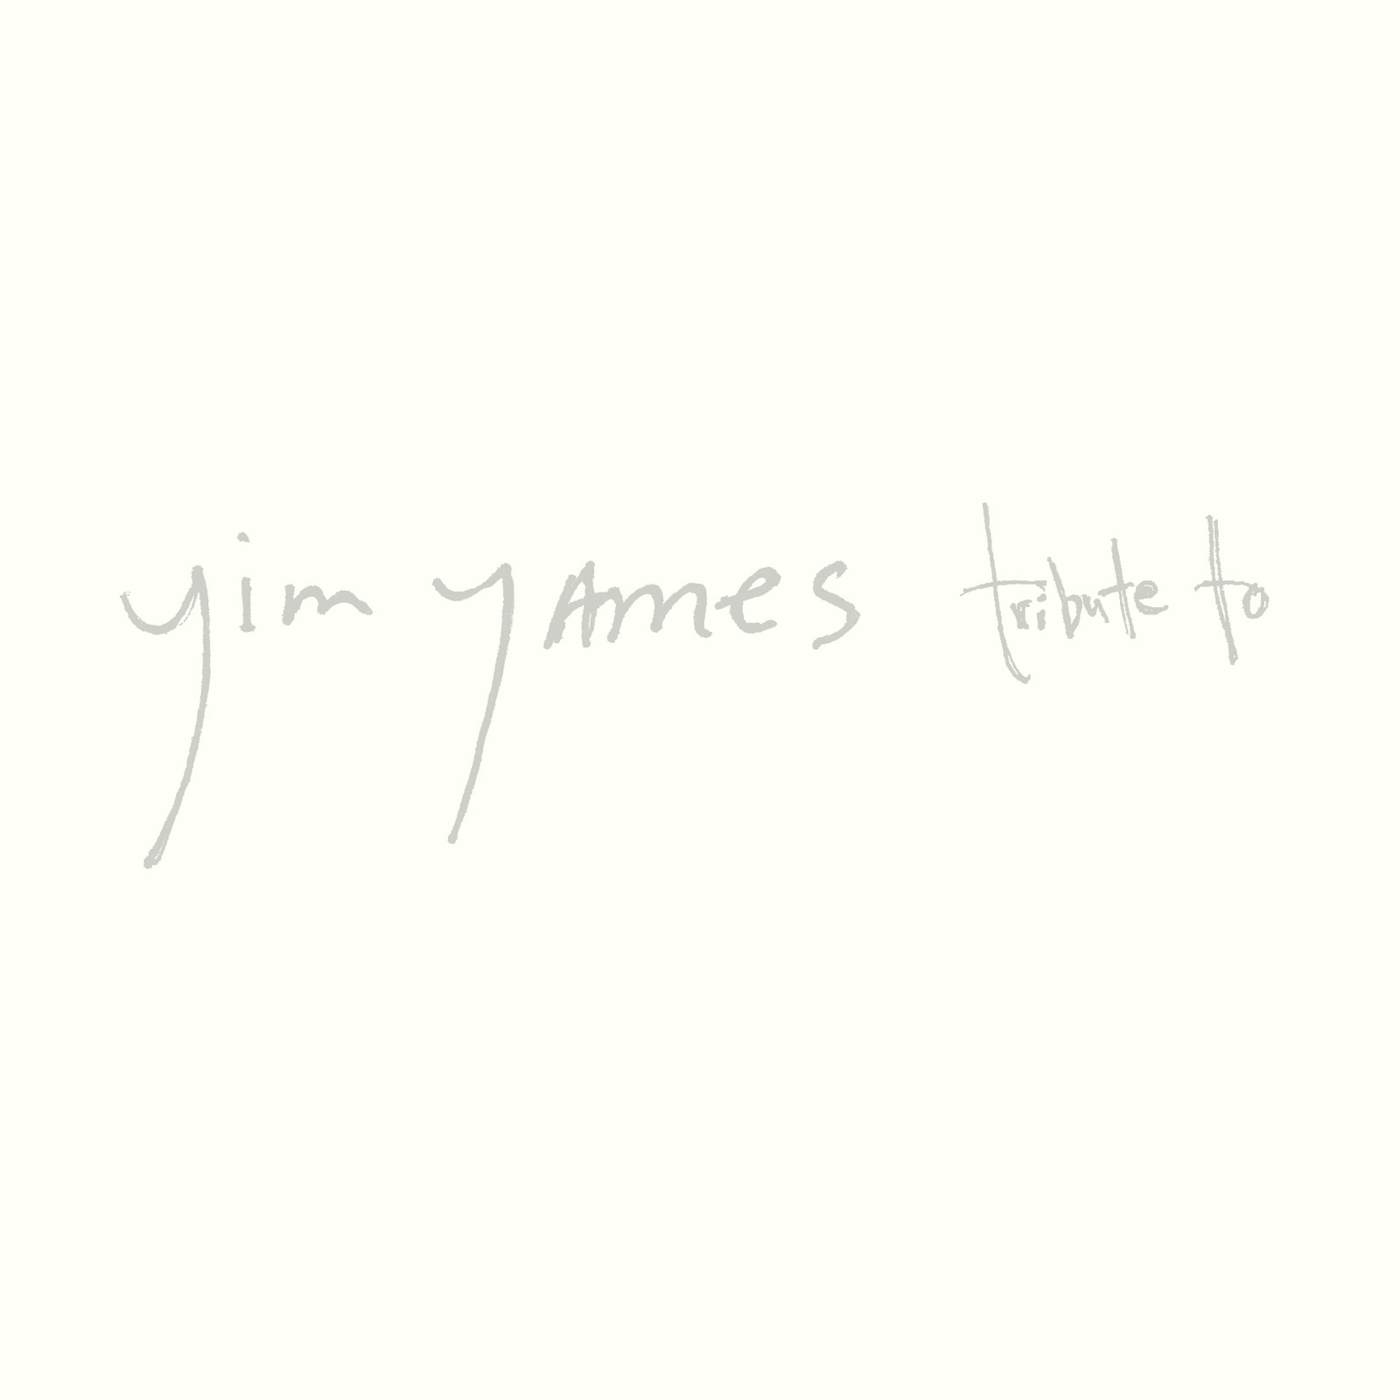 Jim James Tribute To Vinyl Record